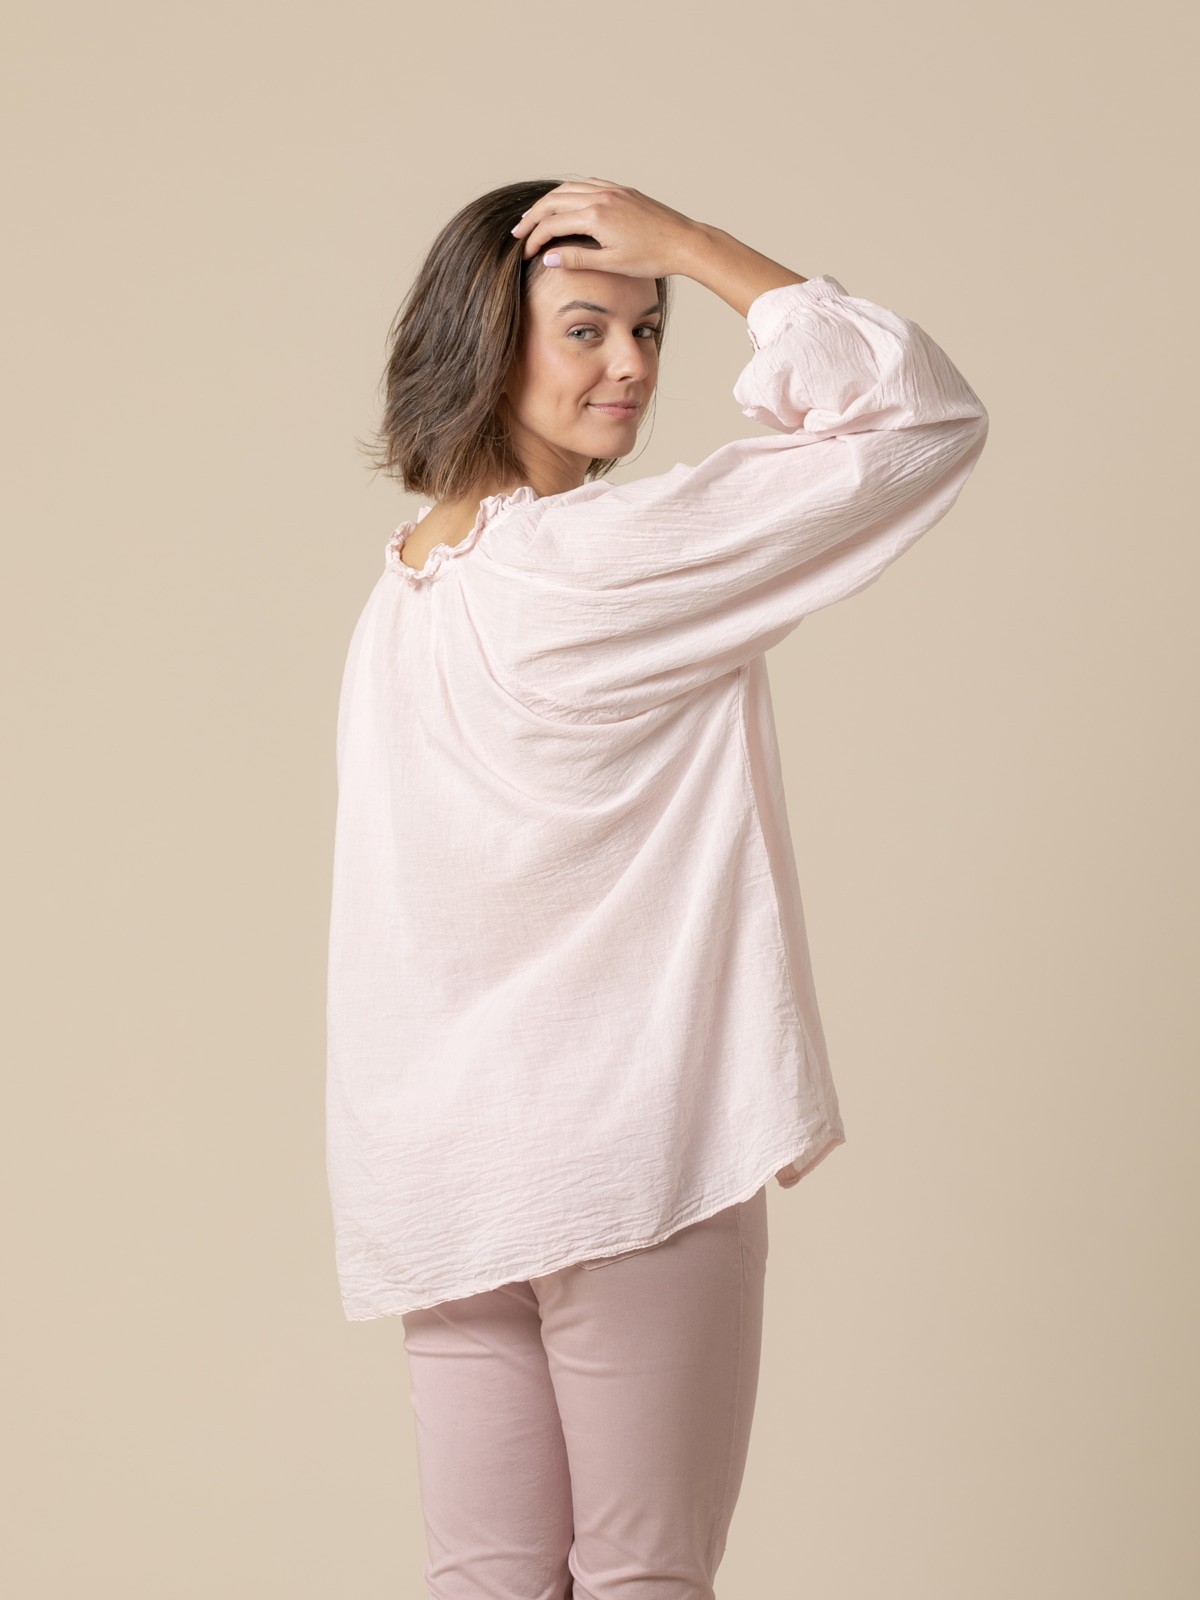 Woman romantic cotton voile blouse details  Pink